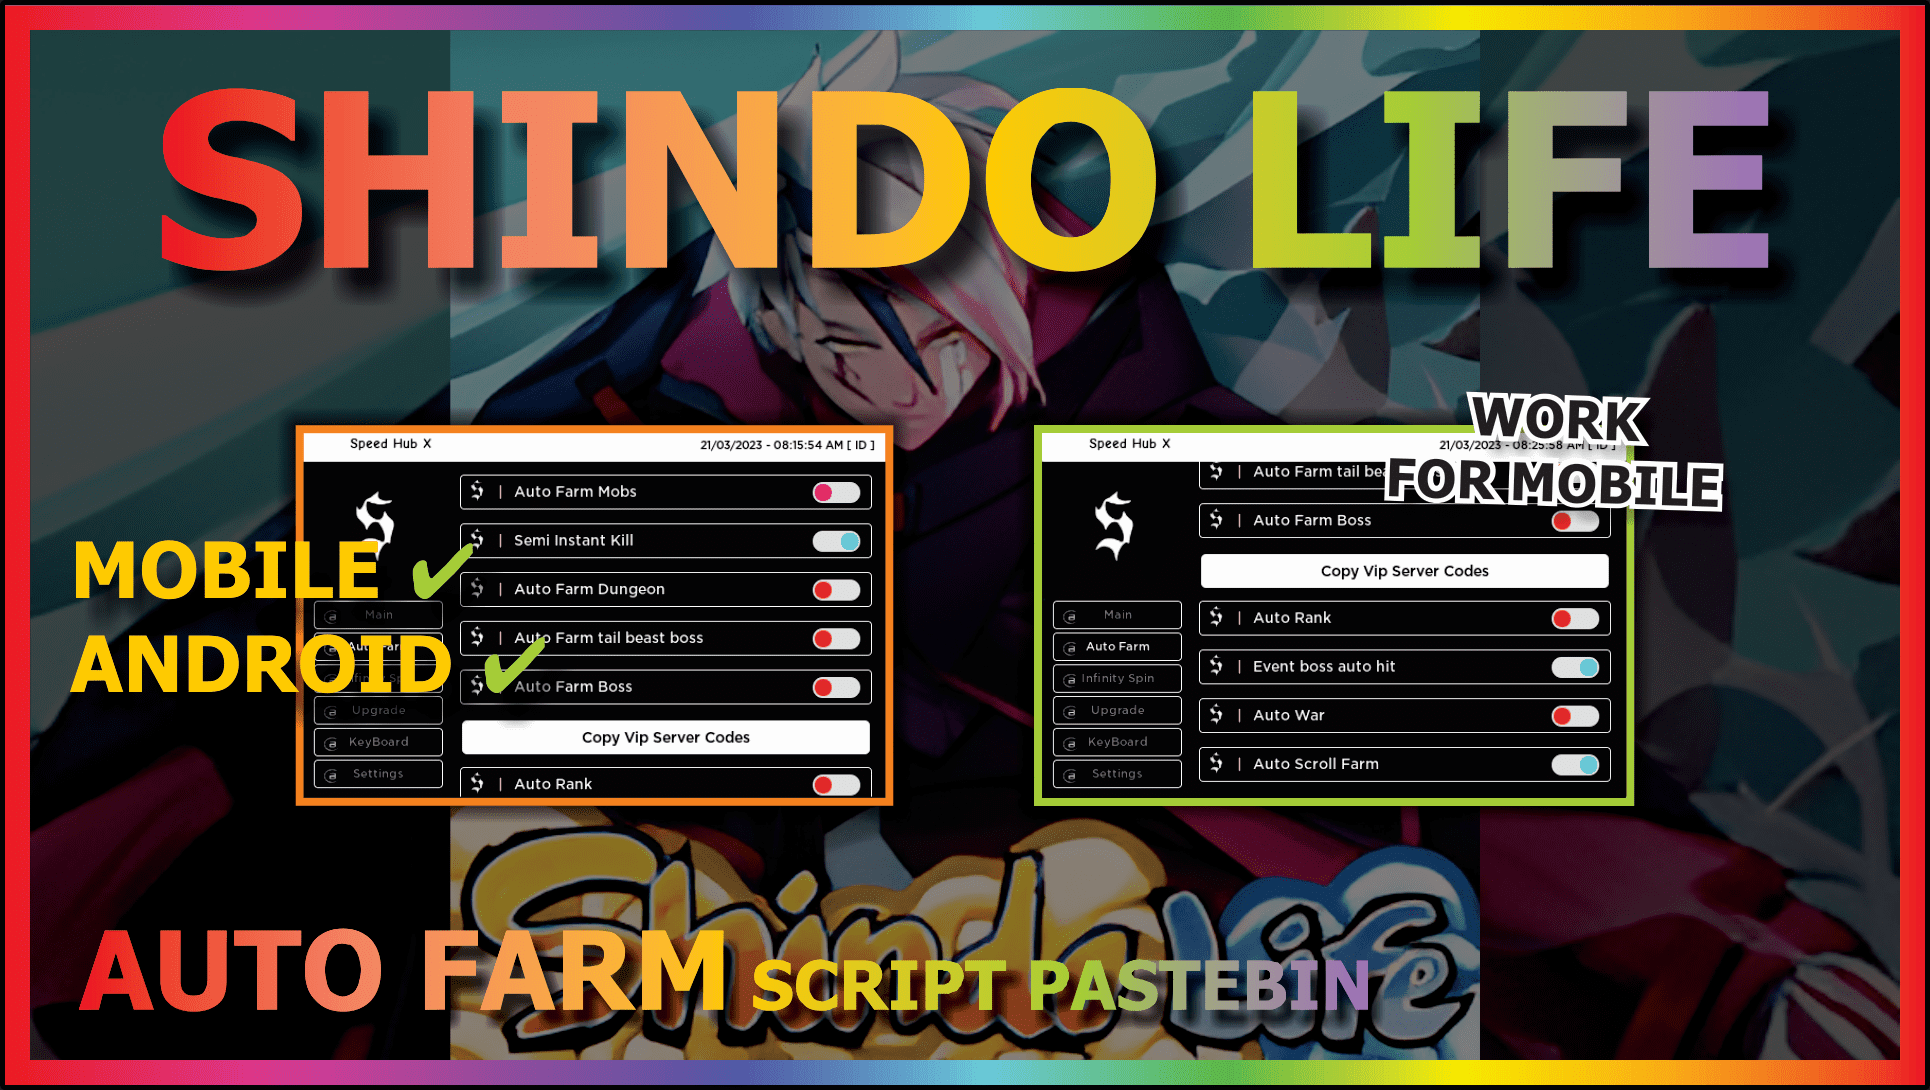 Arceus x (Shindo Life 2)auto farm script in mobile 